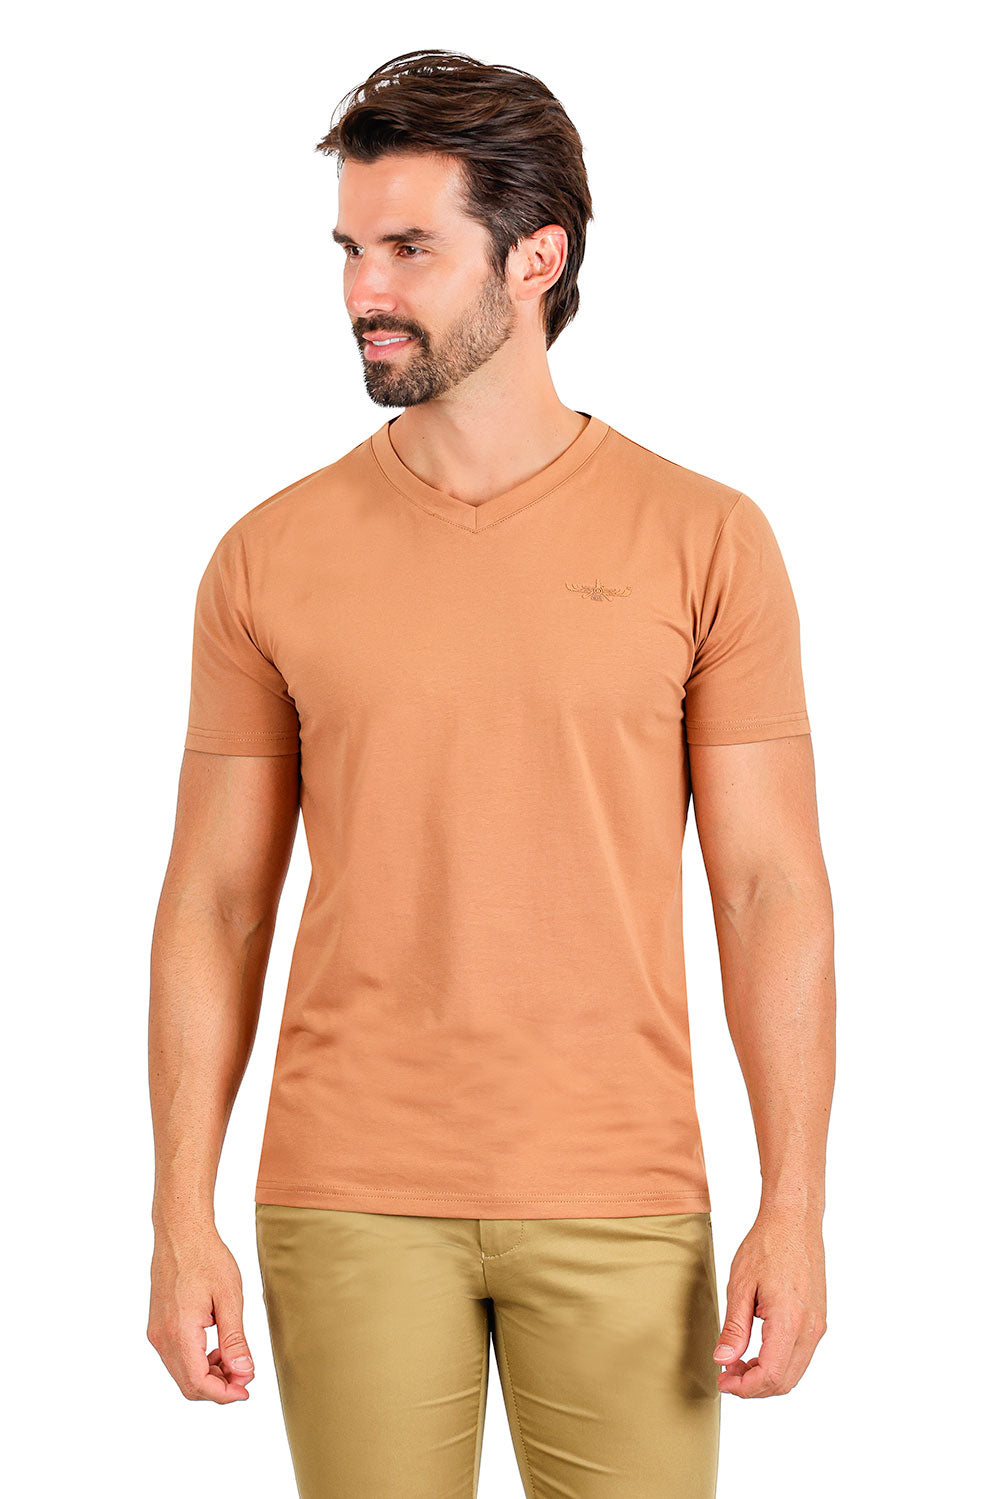 BARABAS Men's Basic Solid Color Premium V-neck T-shirts TV216  Coffee 